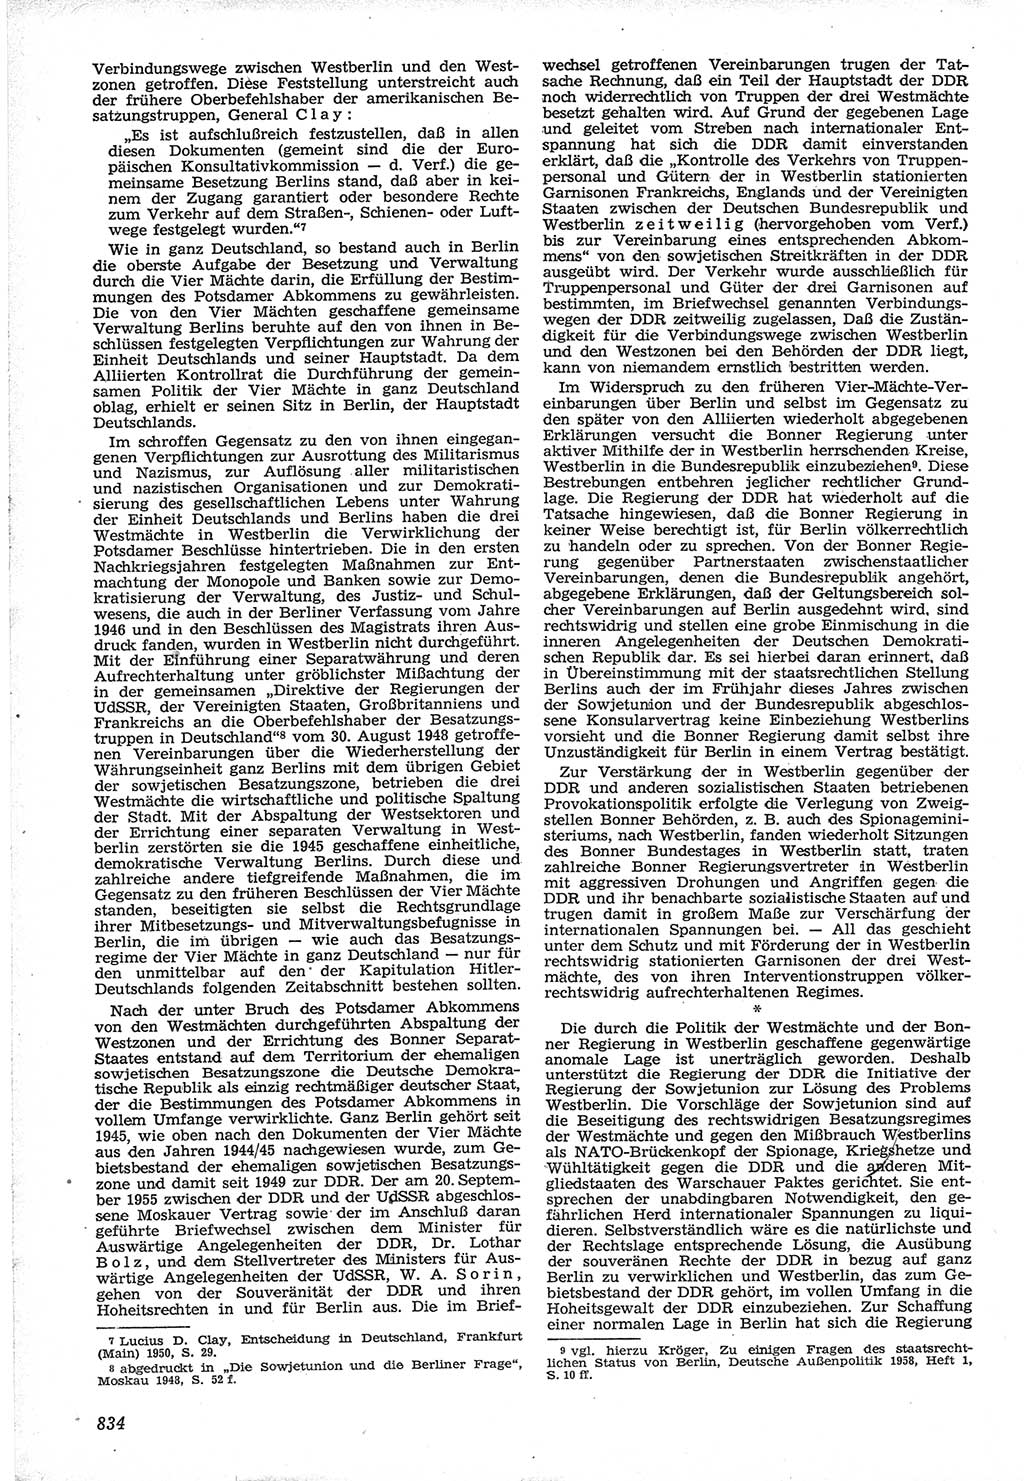 Neue Justiz (NJ), Zeitschrift für Recht und Rechtswissenschaft [Deutsche Demokratische Republik (DDR)], 12. Jahrgang 1958, Seite 834 (NJ DDR 1958, S. 834)